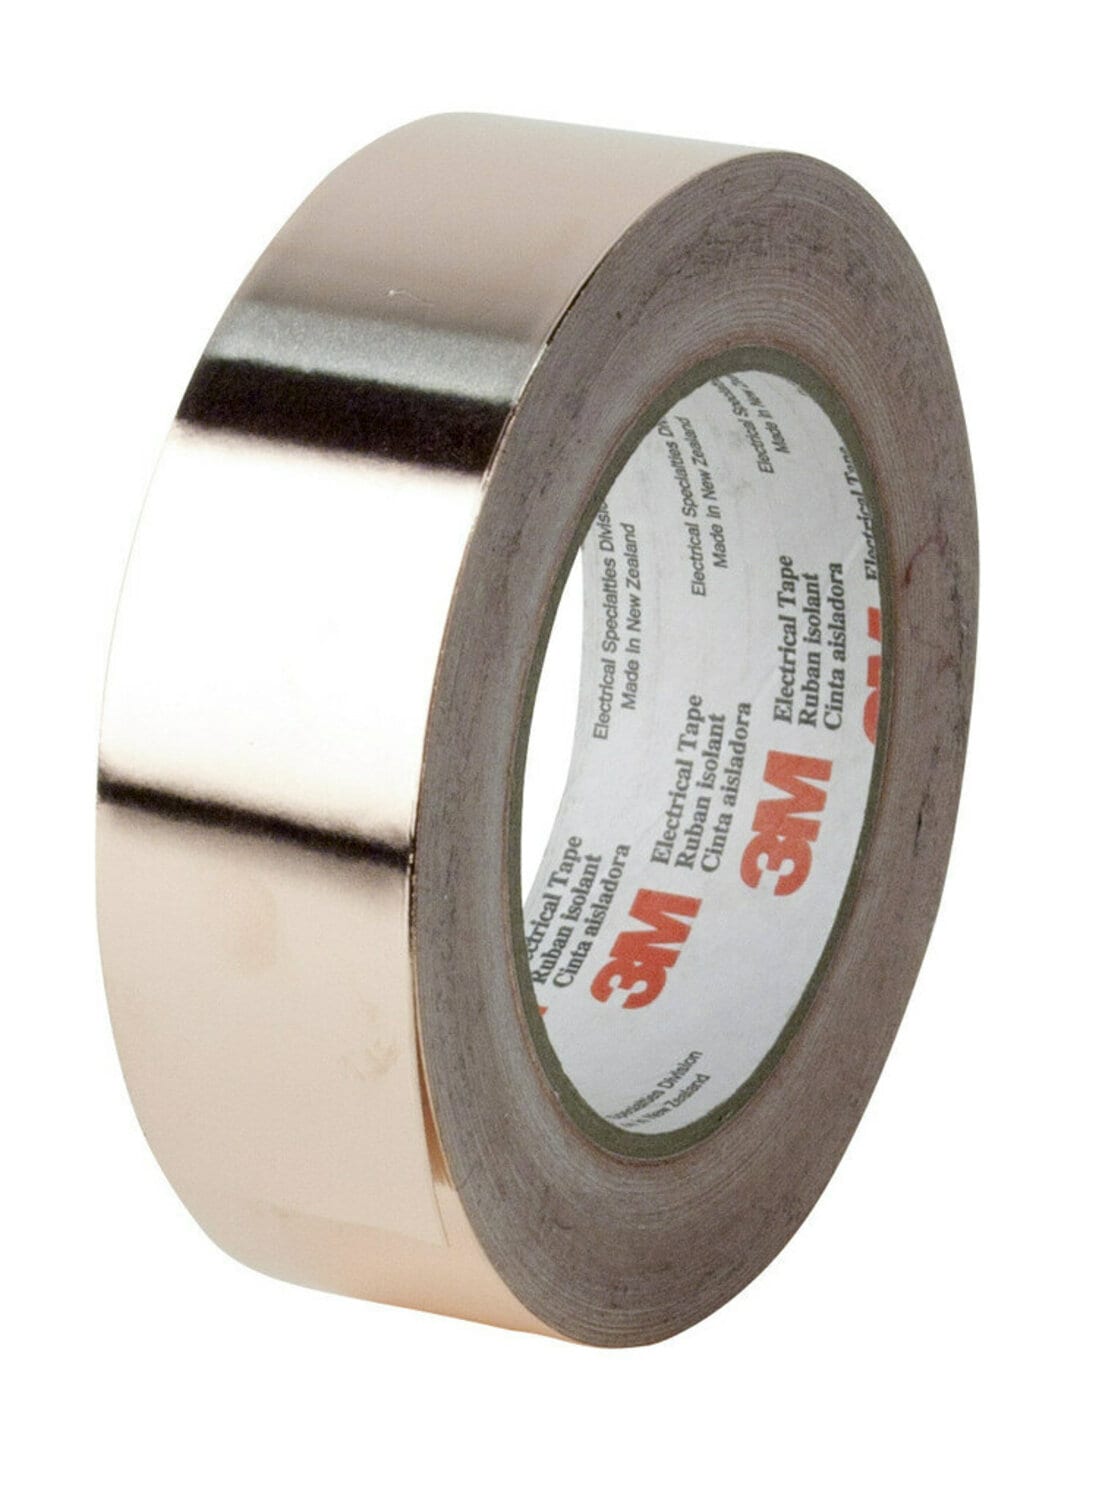 7000132709 - 3M EMI Copper Foil Shielding Tape 1194, 1/4 in x 36 yd (6,35 mm x 33
m), 36 per case